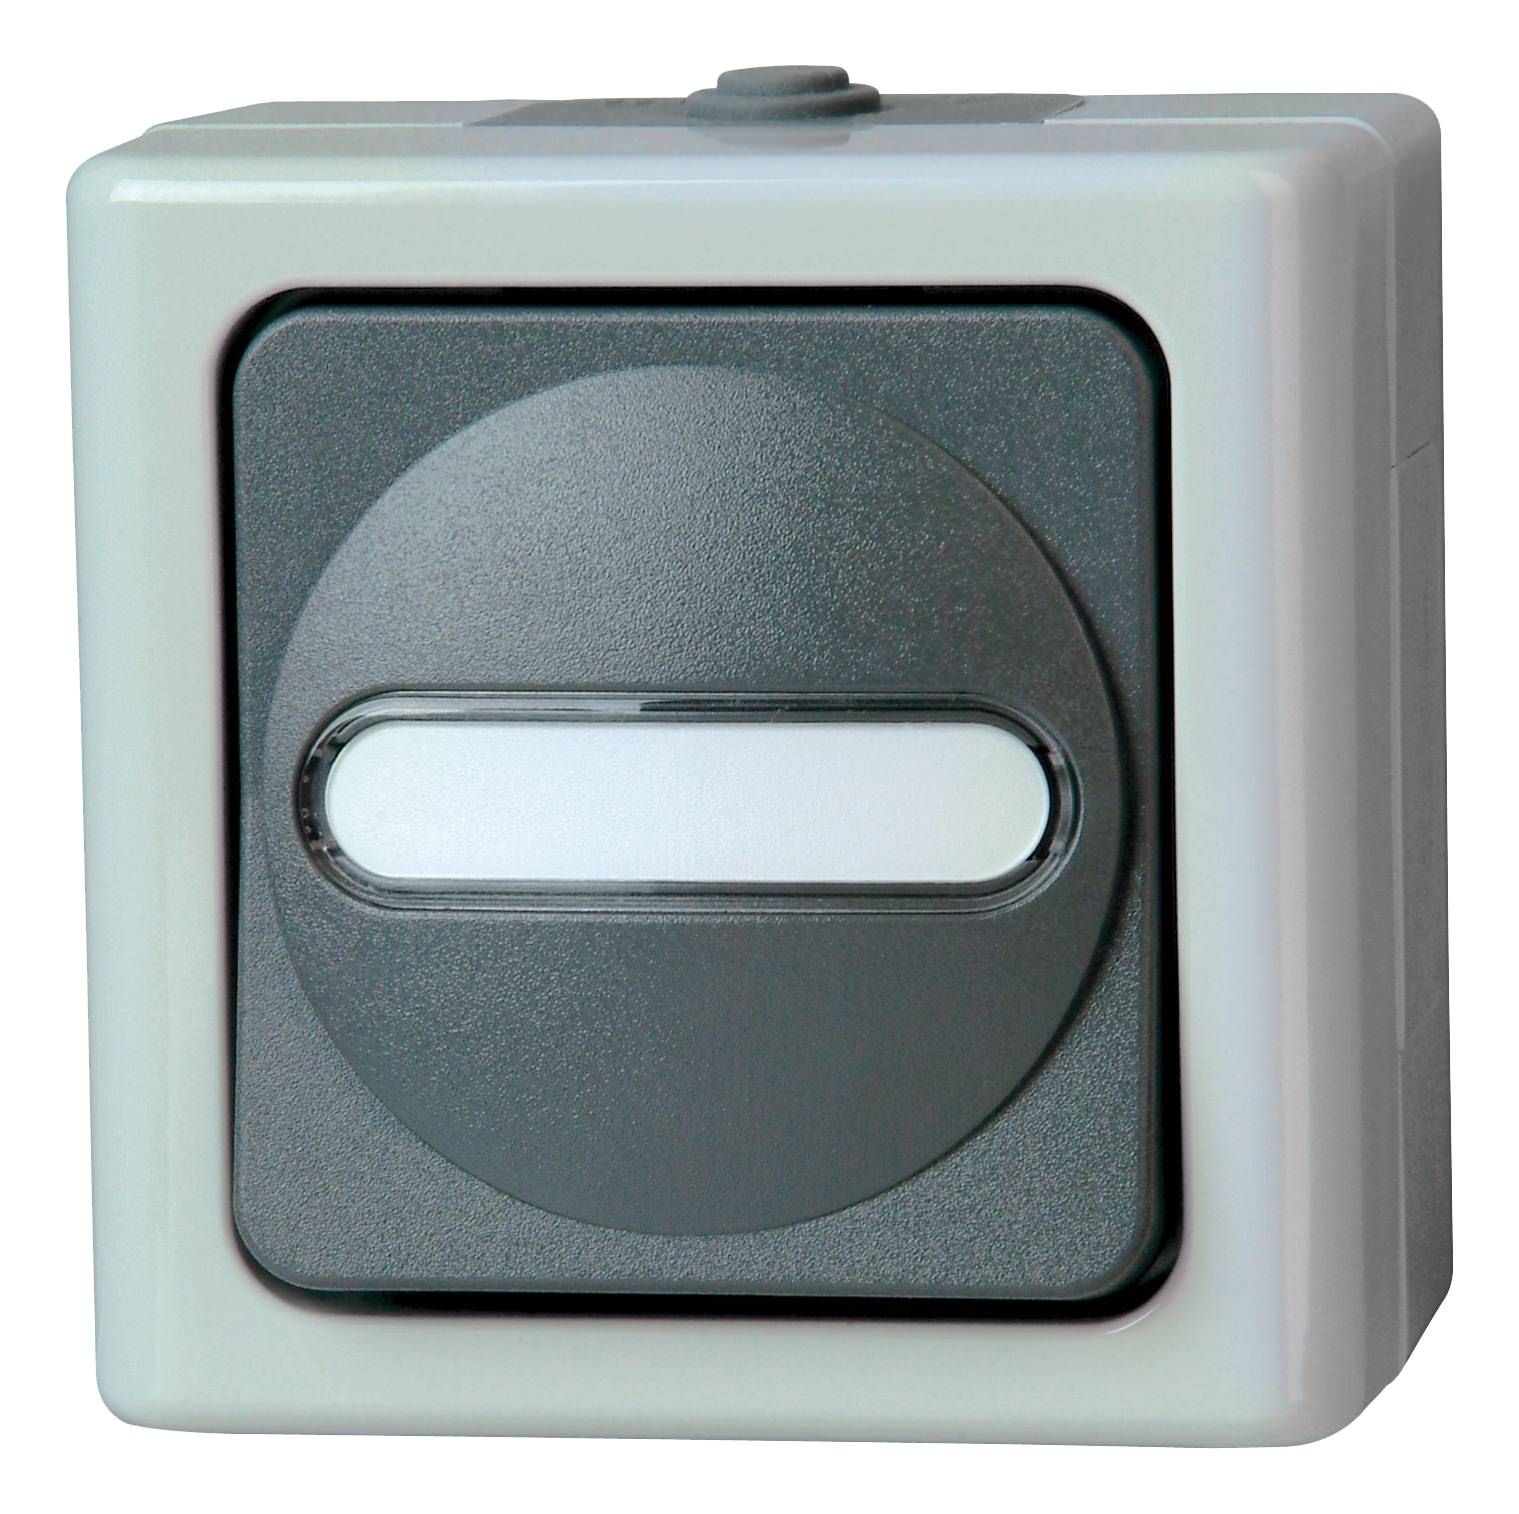 KOPP Glimmlampe 230V  0,16W für Schalter und Taster beleuchtbar zur Orientierung 